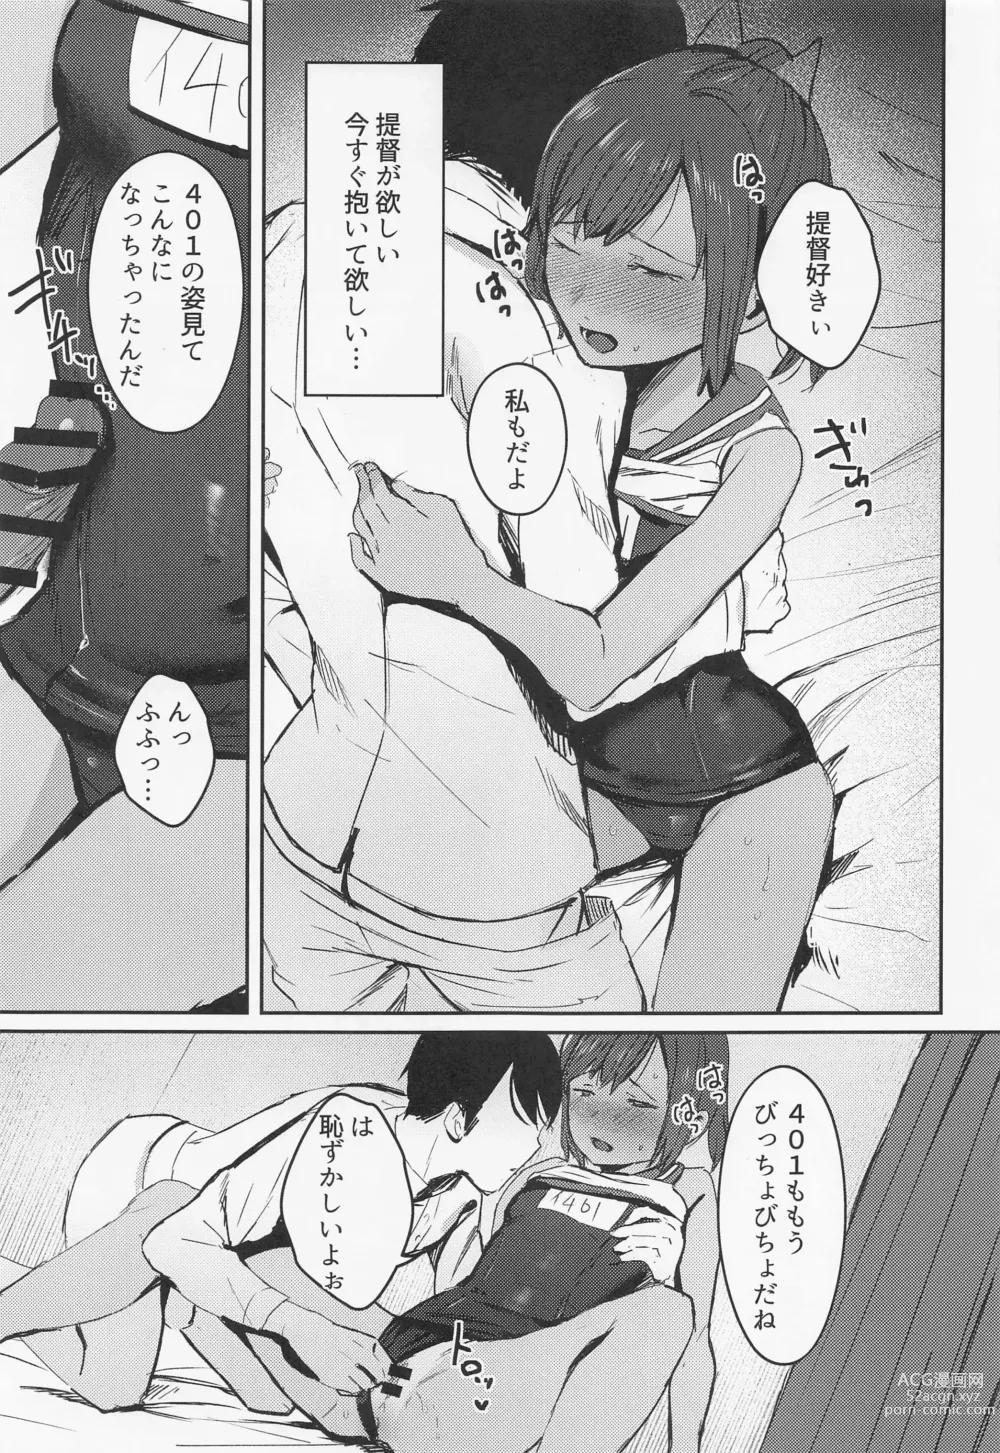 Page 8 of doujinshi 401 Ichaicha Biyori